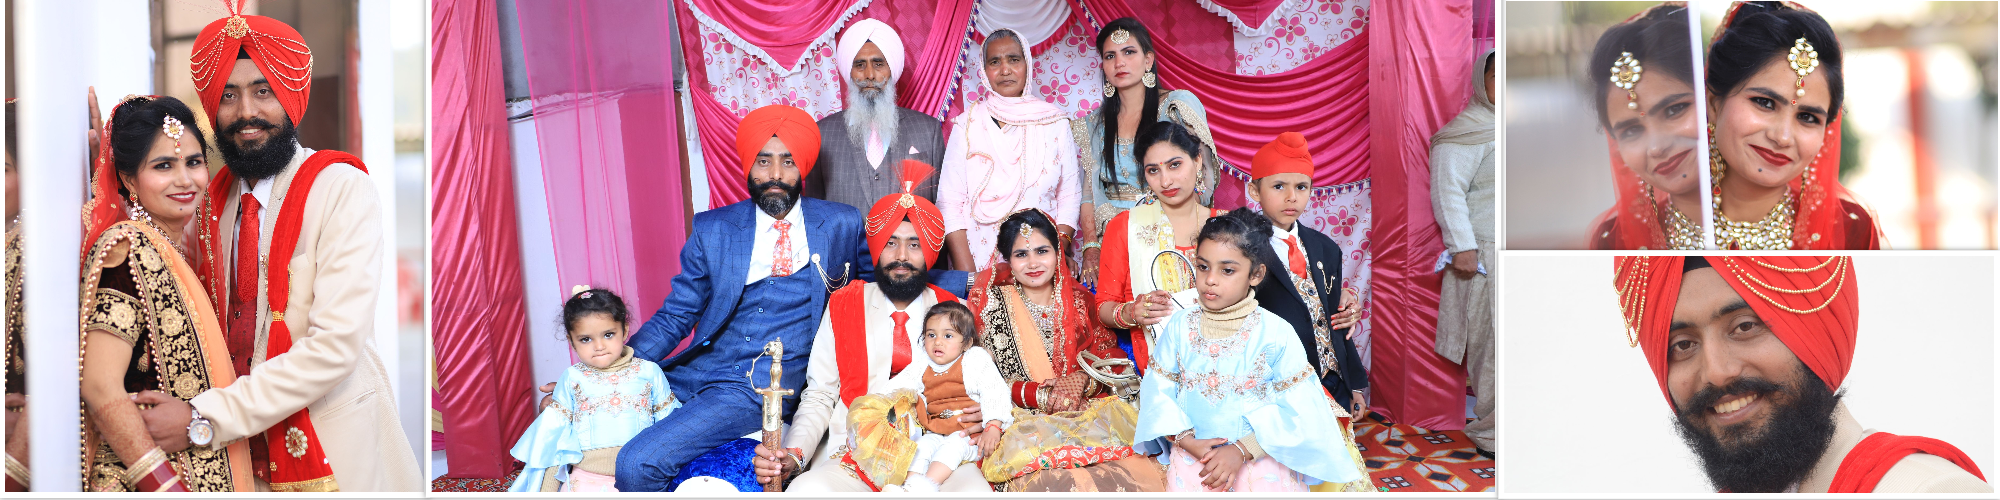 punjabi marriage